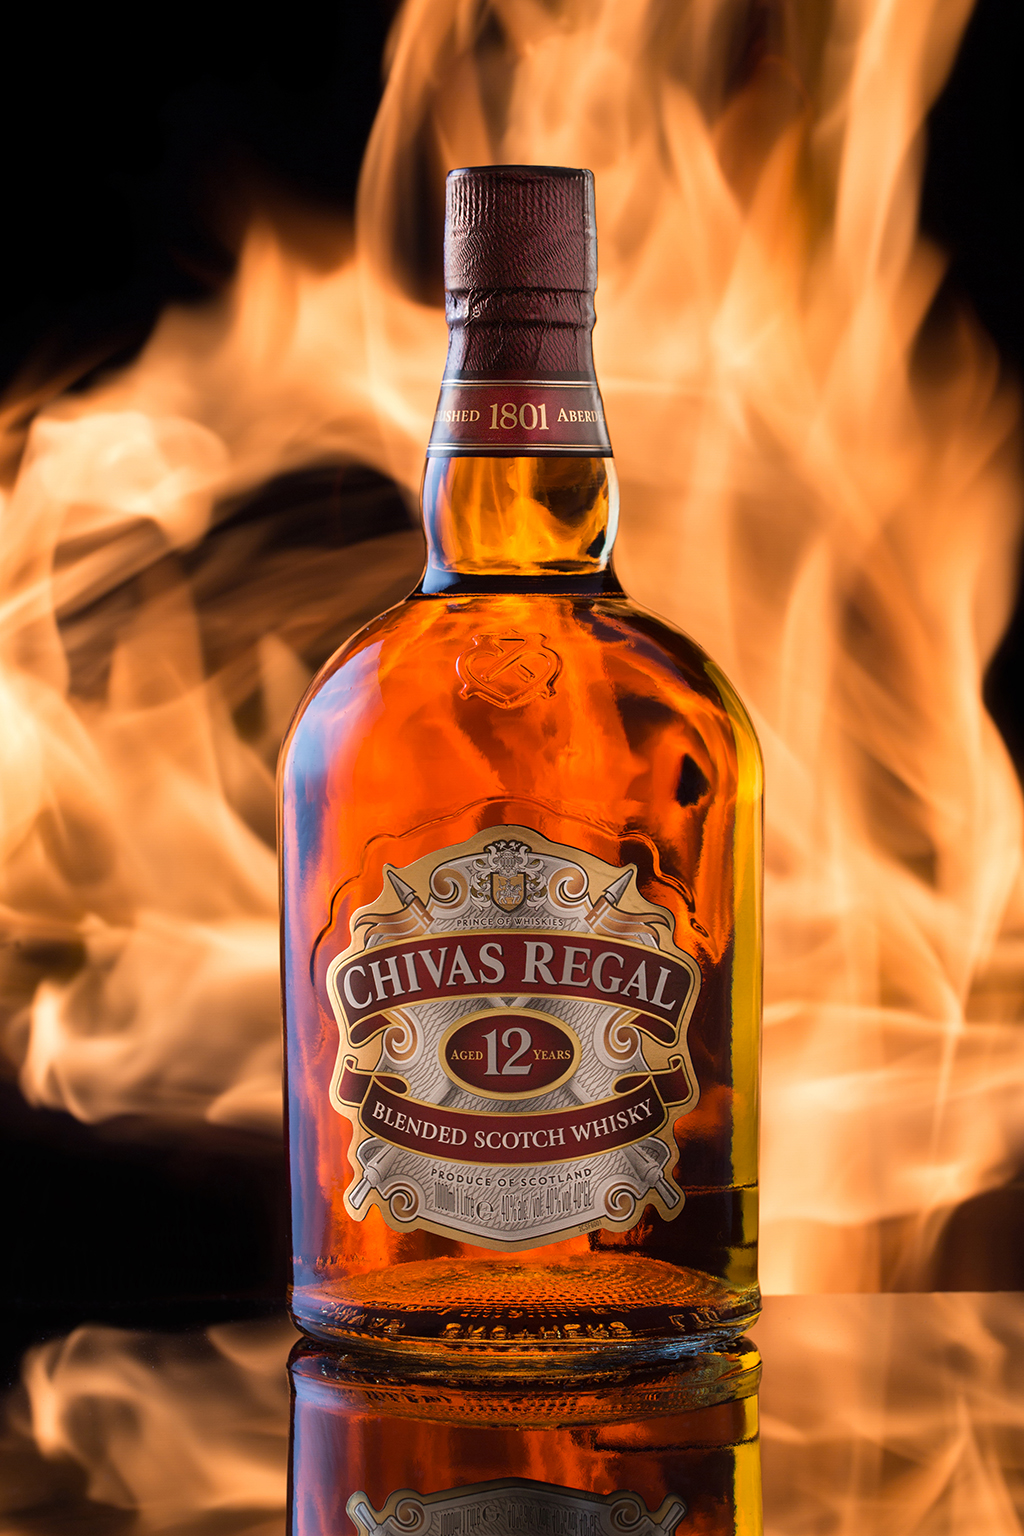 Рекламная фуд фотография виски CHIVAS REGAL с огнём. Фото сделано в Сочи в процессе фотосъёмки для рекламы для ресторана.